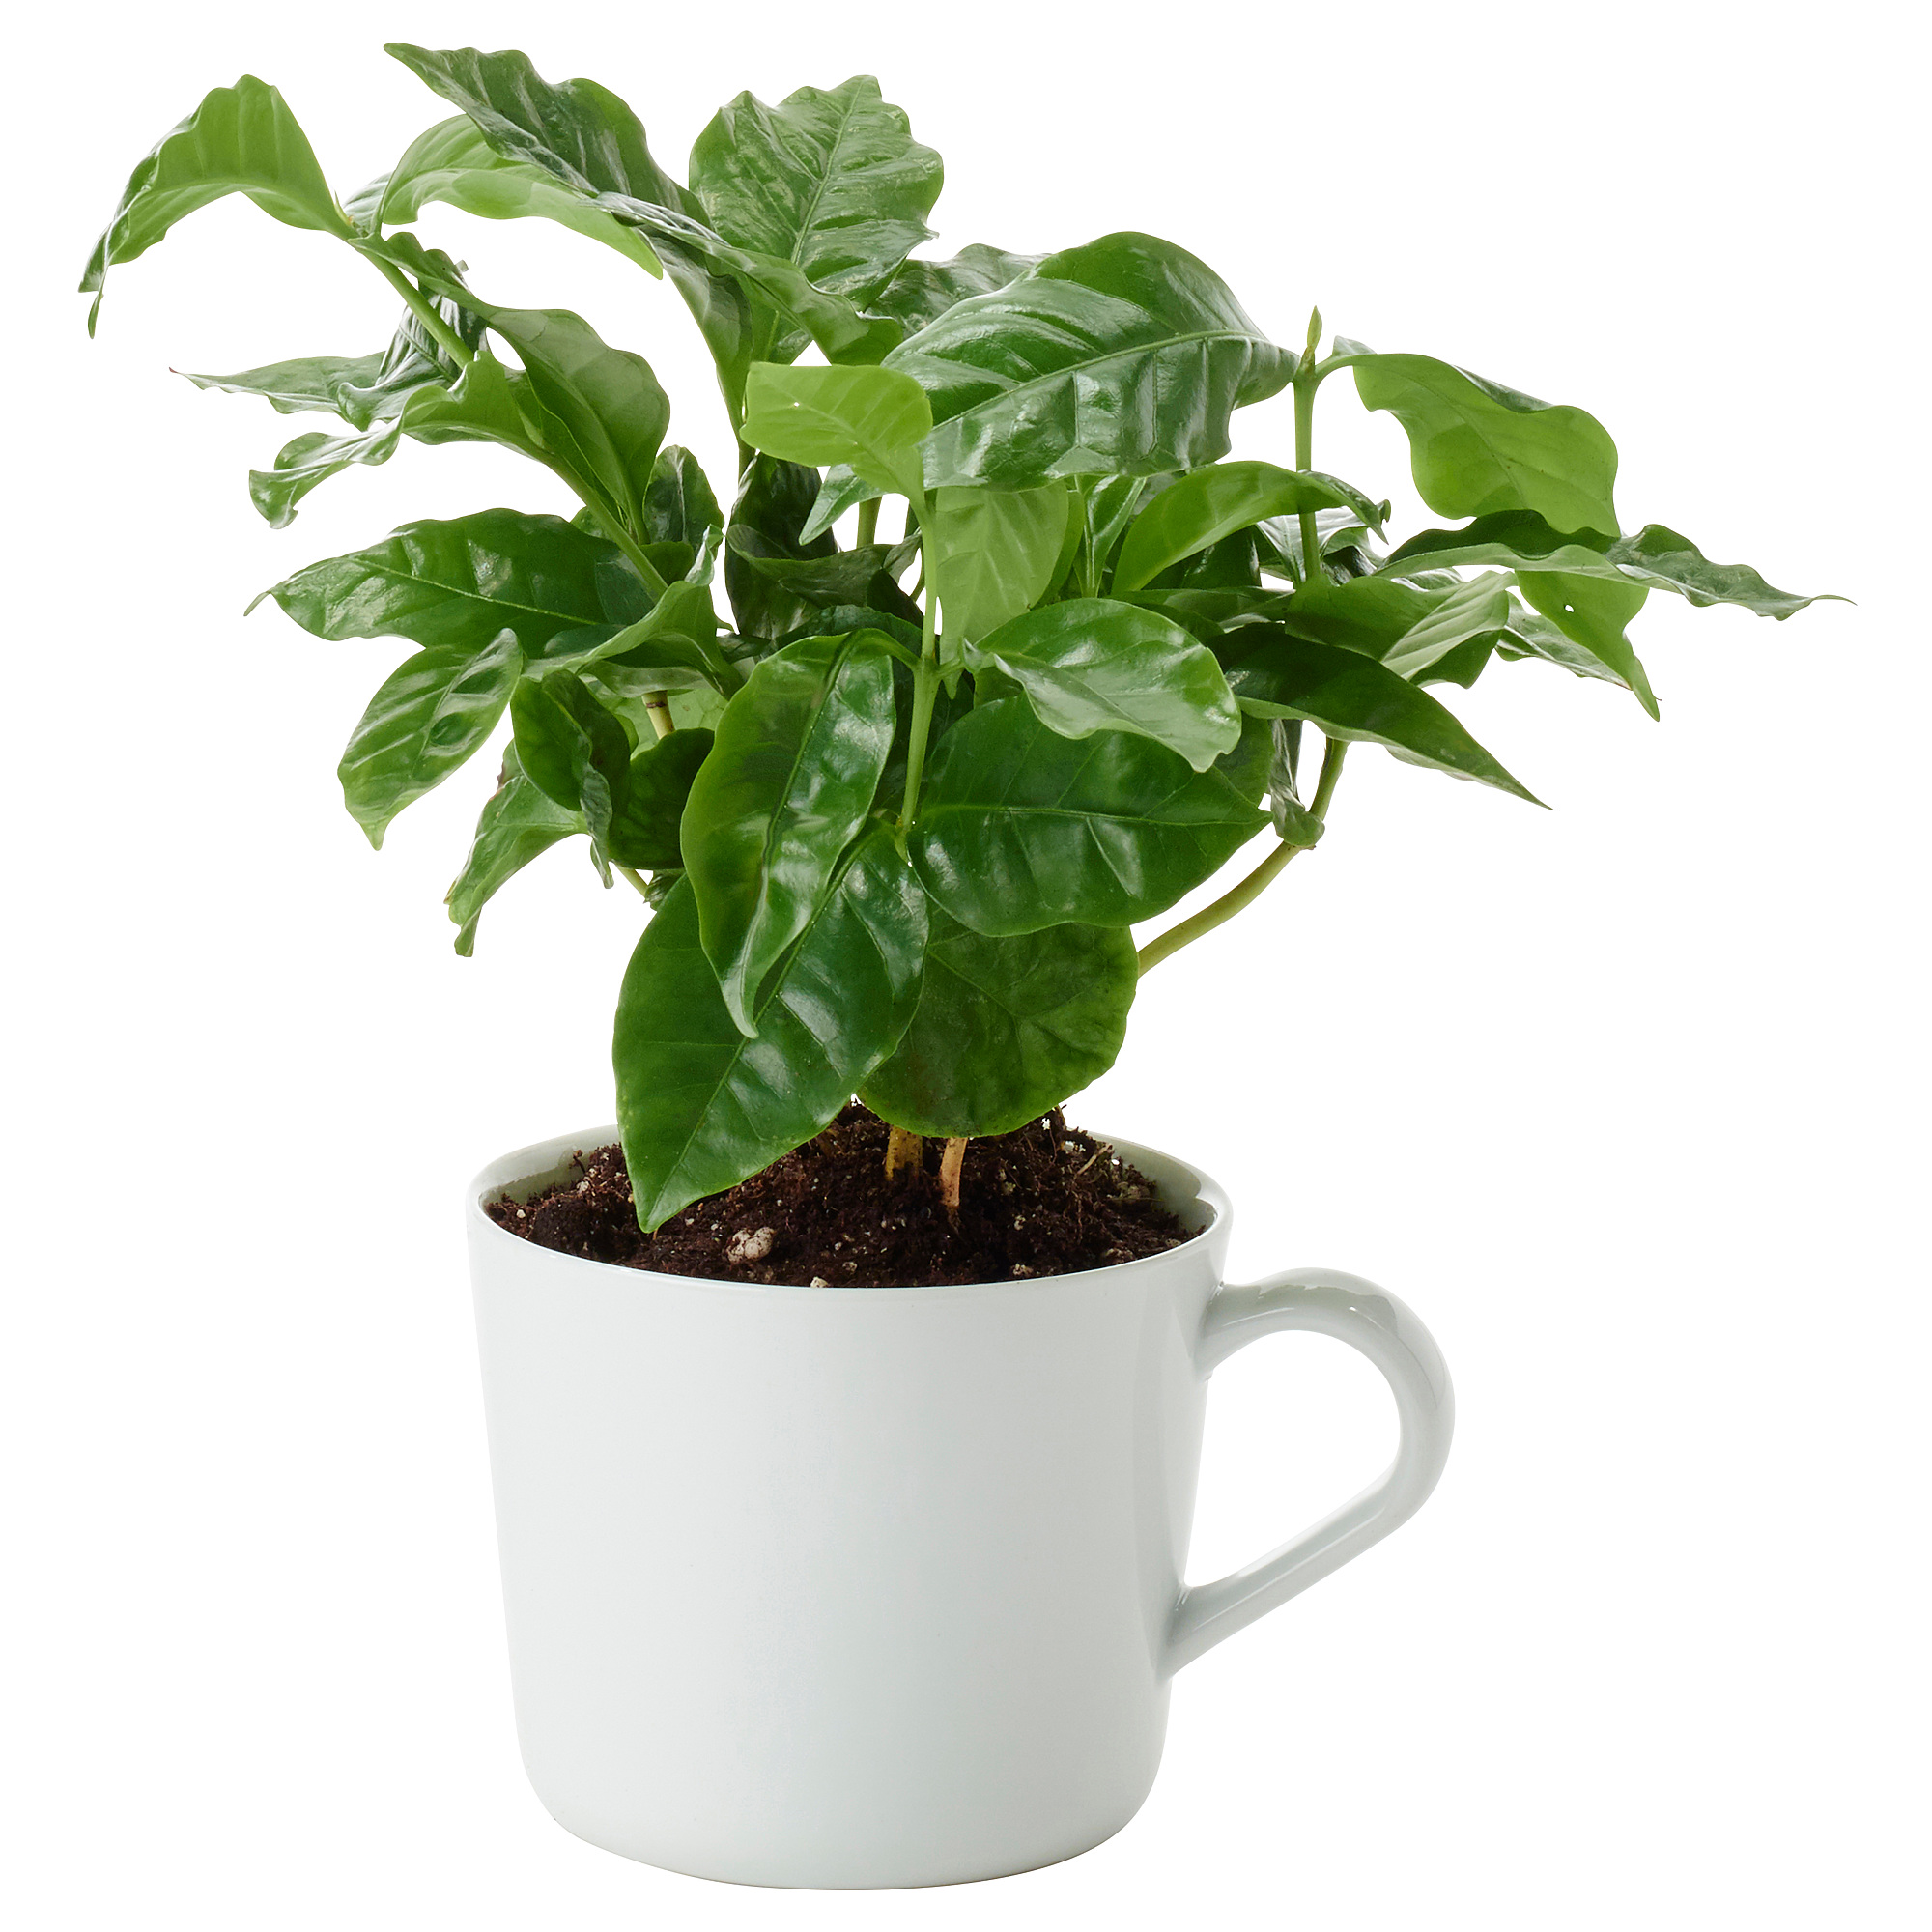 Домашние растения кофе арабика. Цветок кофе Арабика. Комнатное растение Coffea Arabica. Кофейное дерево кофе Арабика. Coffea Arabica /кофе Арабика.